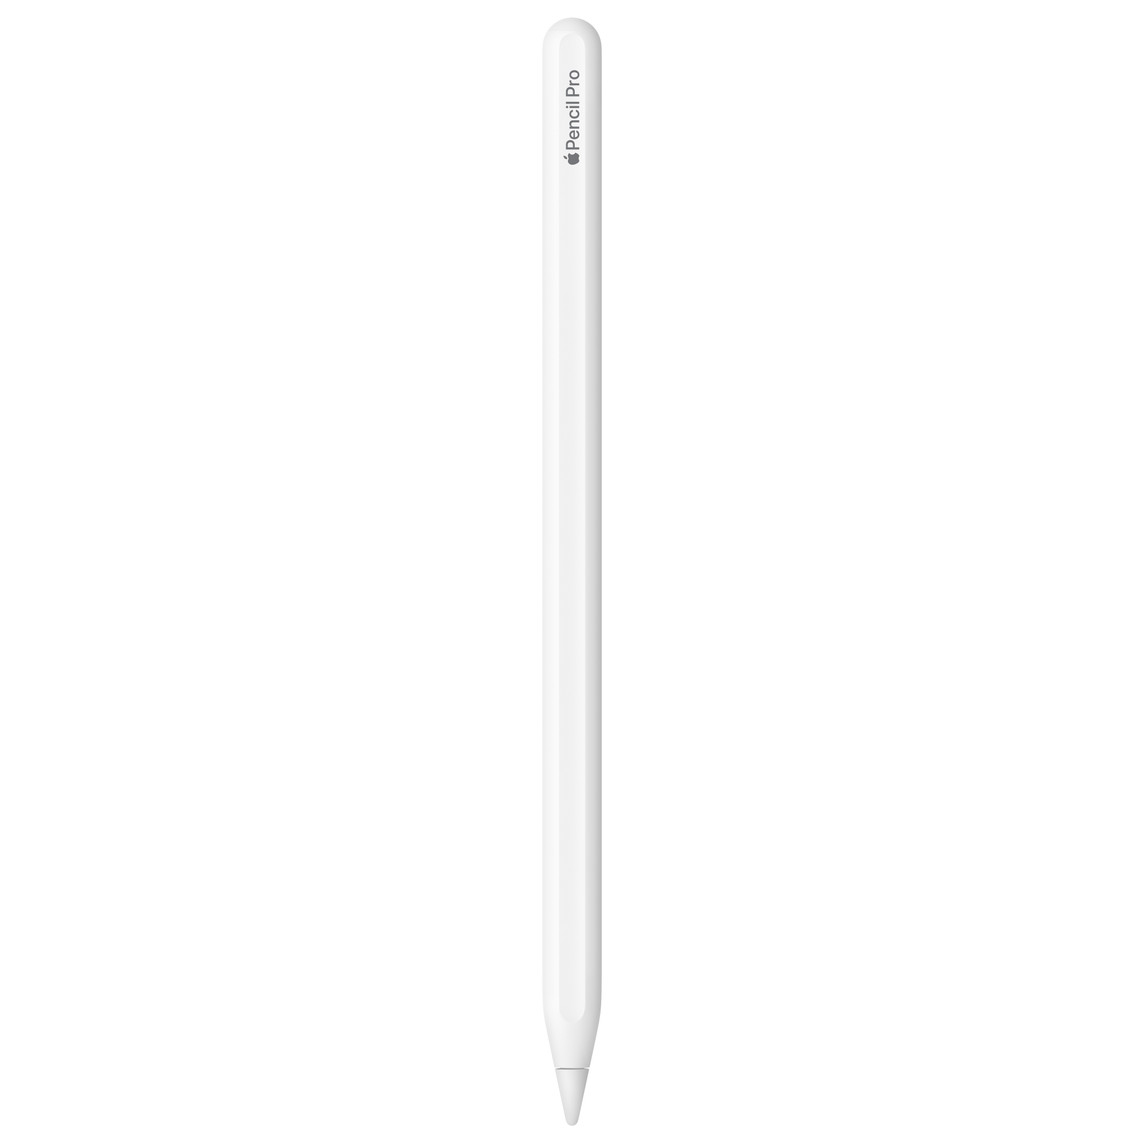 Apple Pencil Pro, branco, com a gravação Apple Pencil Pro e a palavra Apple representada pelo logótipo da Apple